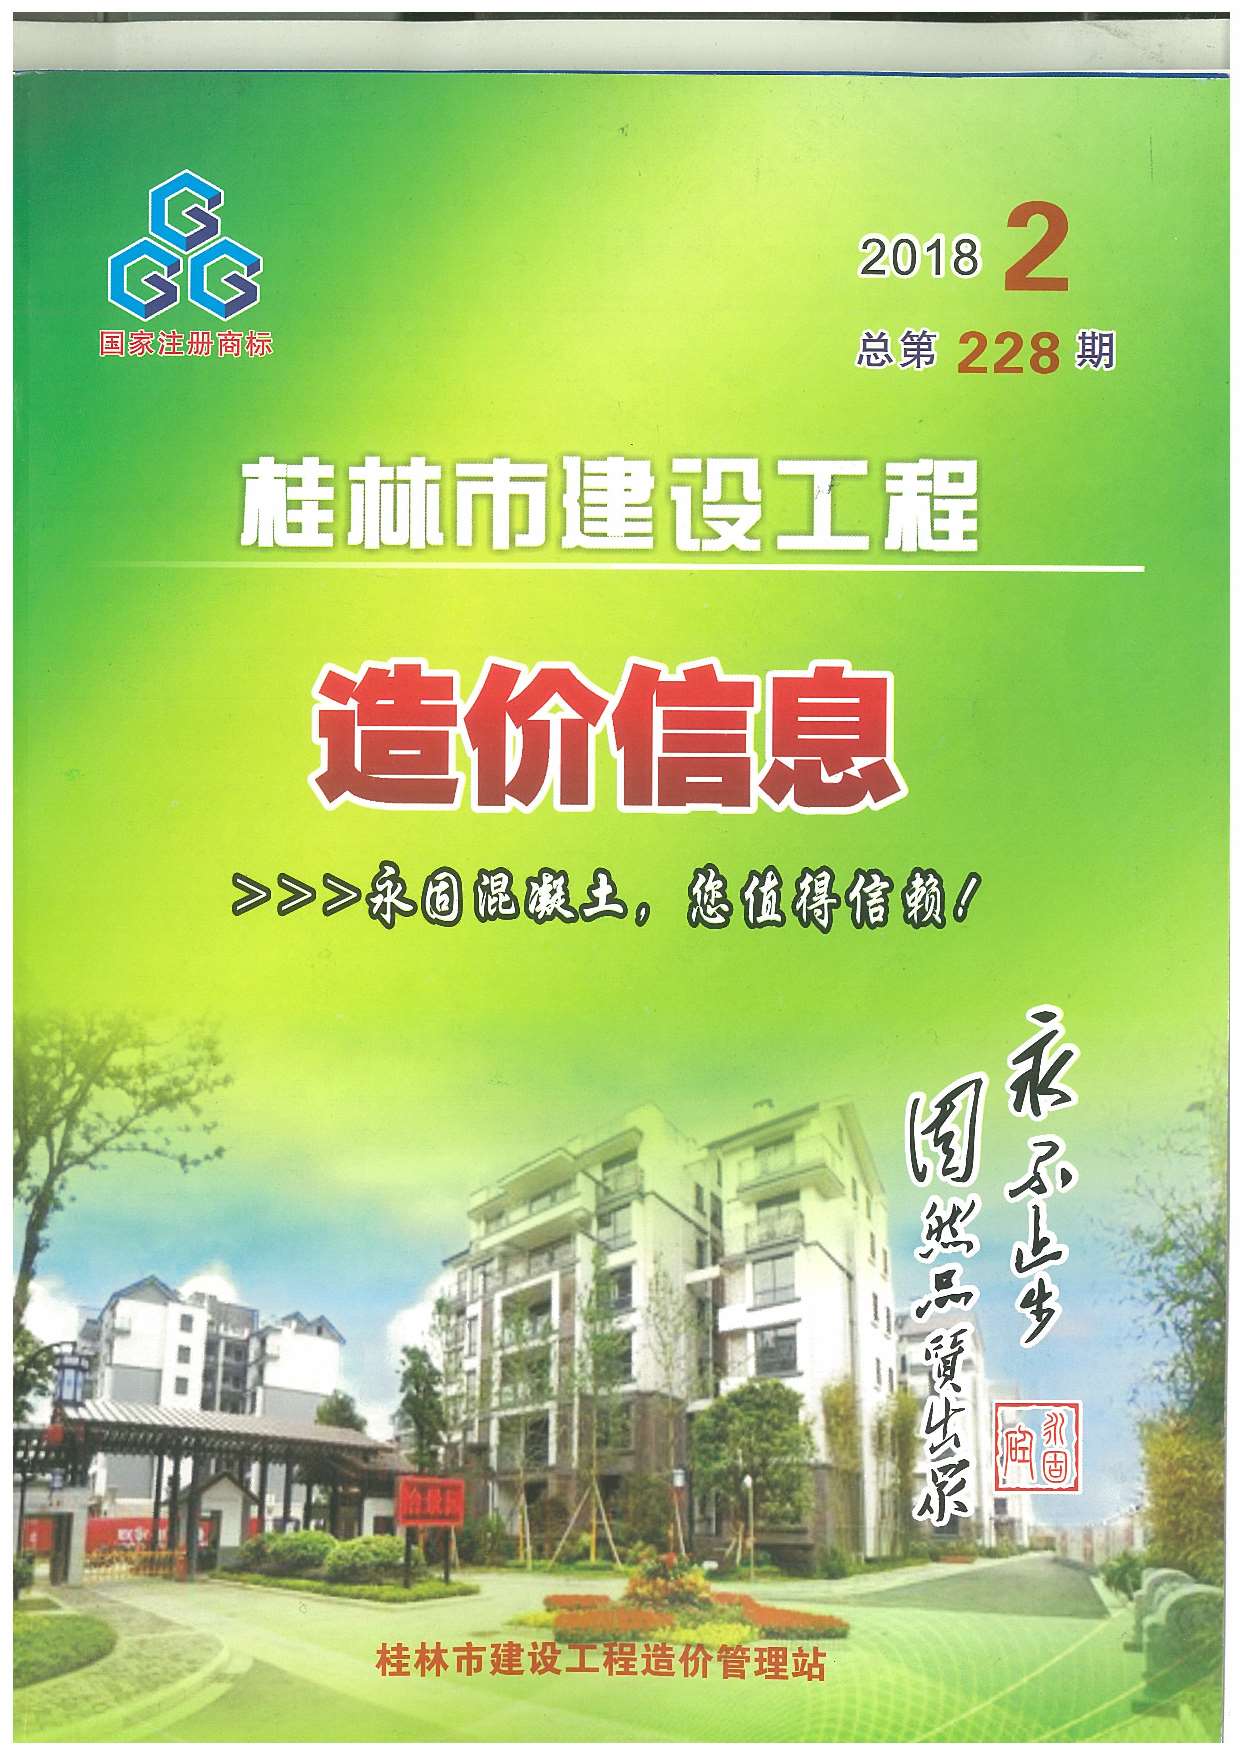 桂林市2018年2月建设工程造价信息造价库信息价